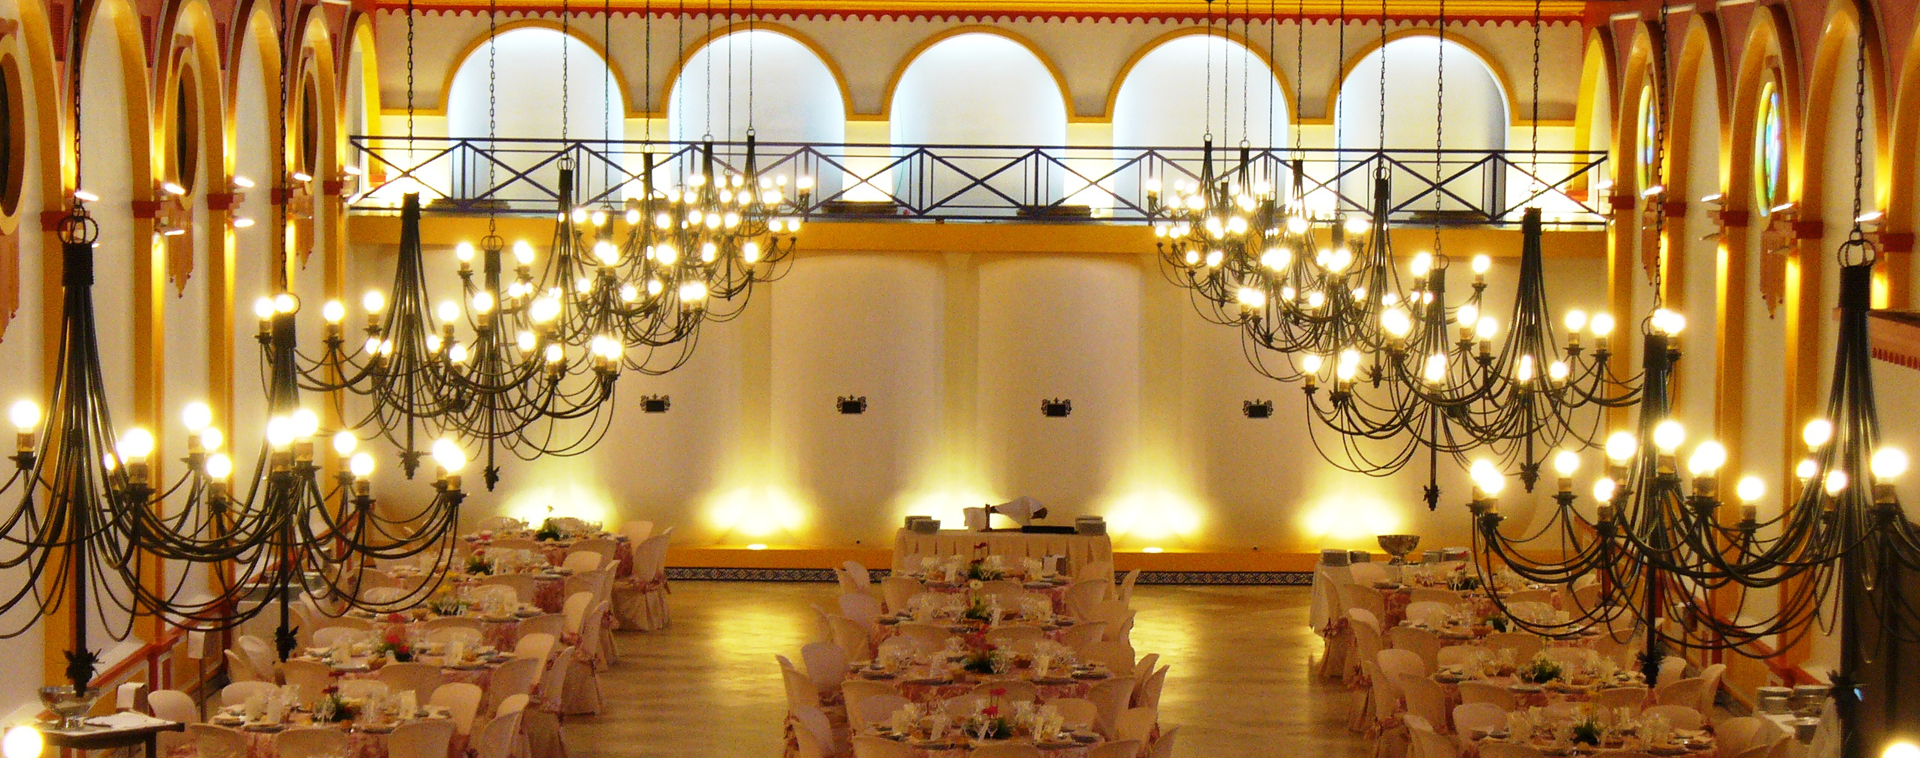 Si estas buscando salones para bodas en Huelva, no pierdas la oportunidad de venir a ver nuestras instalaciones. Disponemos de amplios salones y espacios al aire libre para celebrar bodas civiles y religiosas.